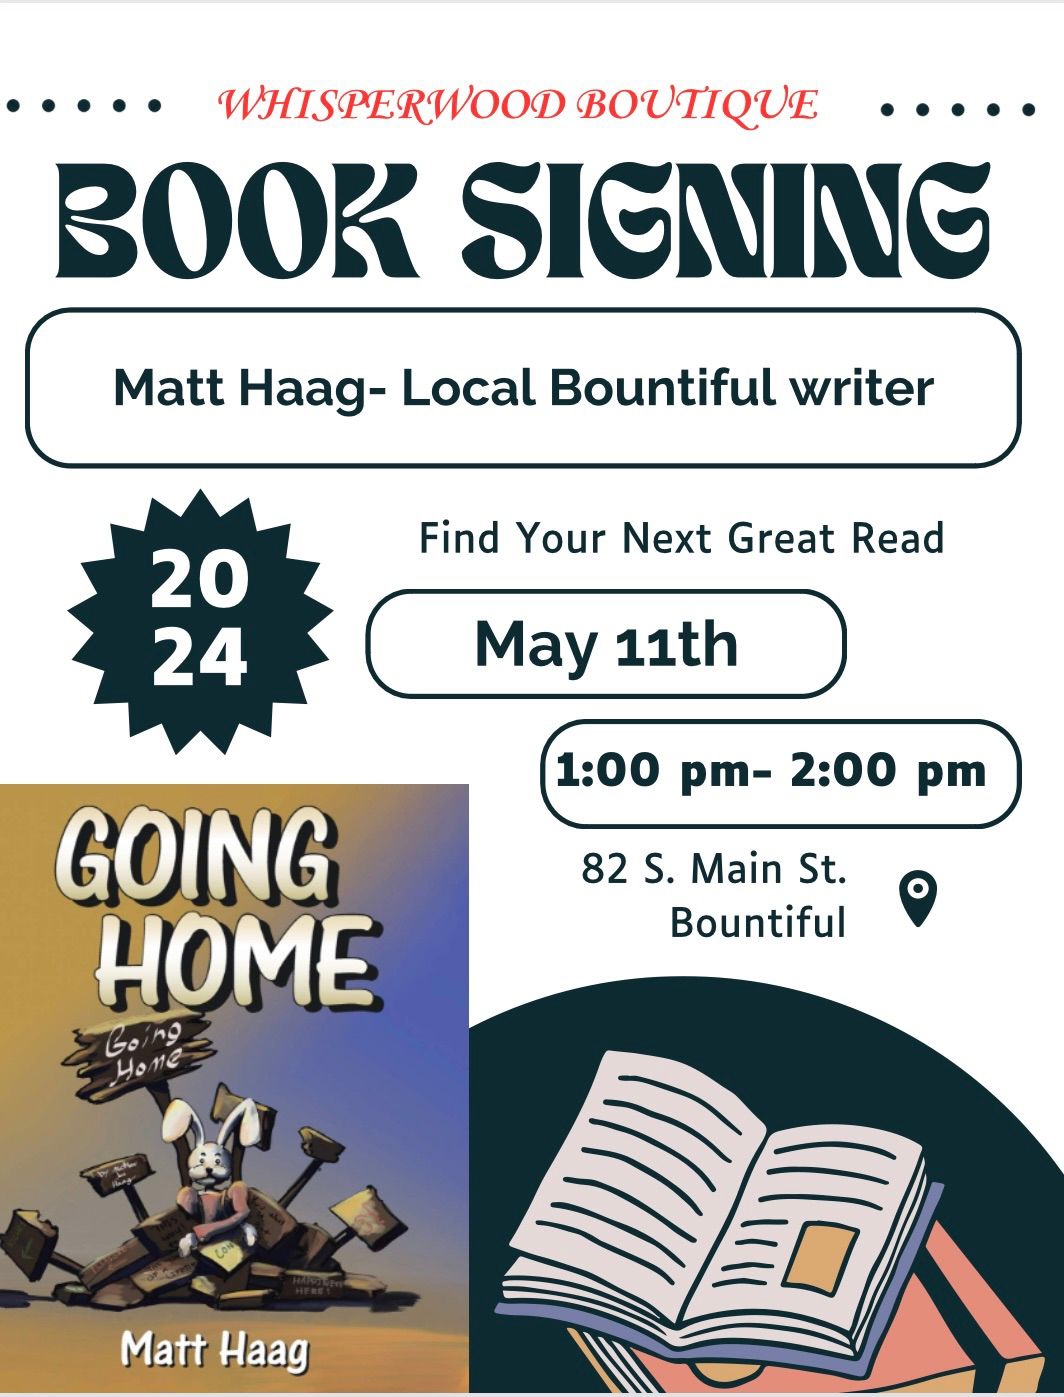 Book signing- Matt Haag